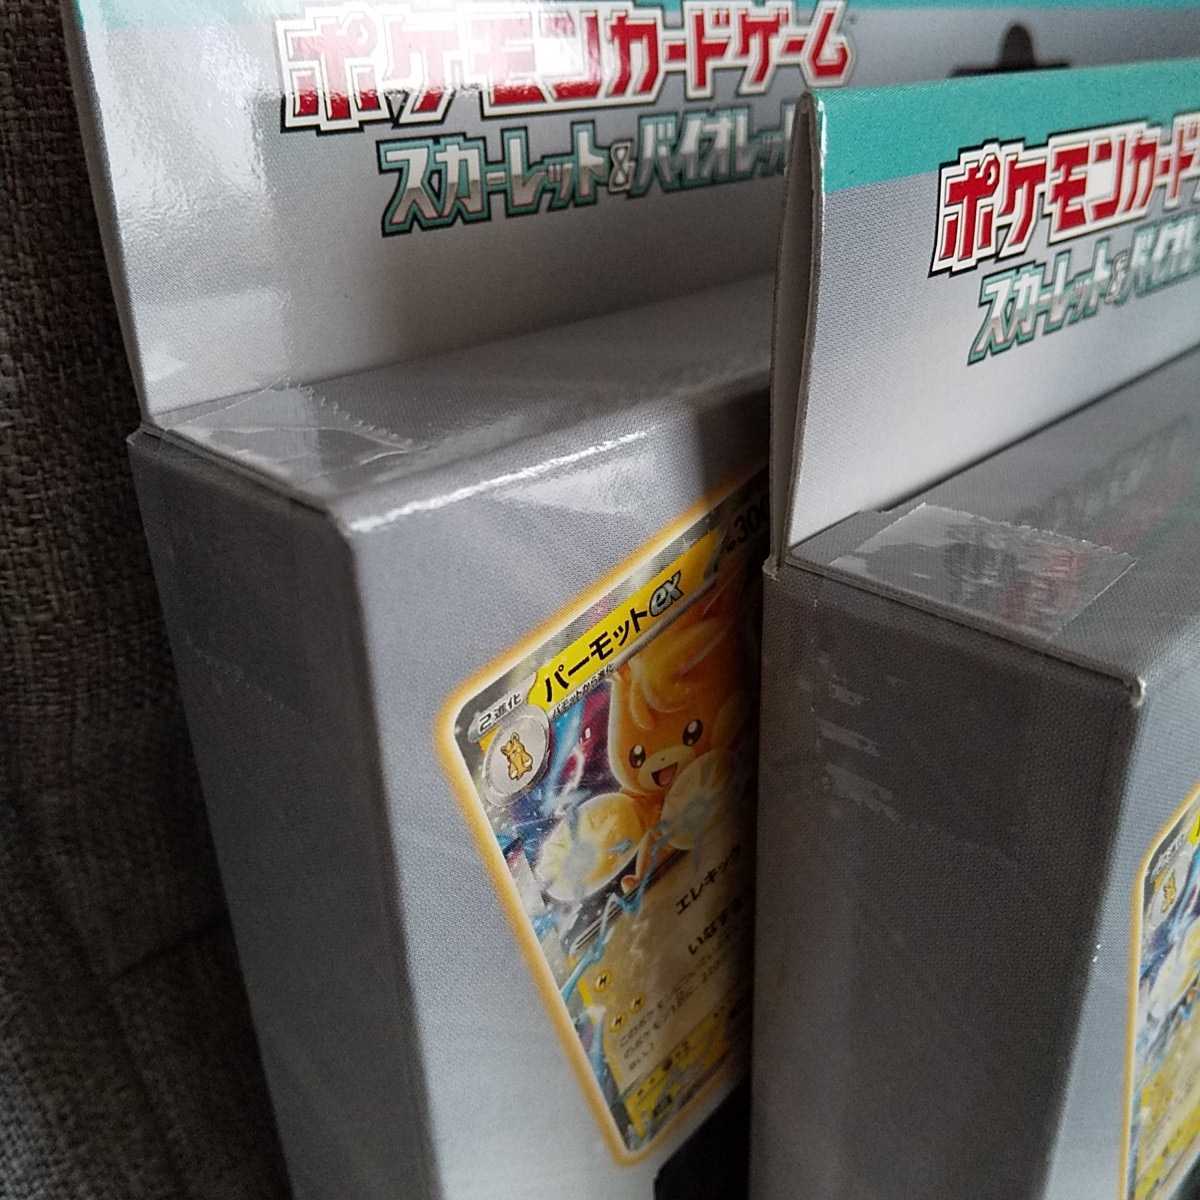 ポケモンカードゲーム exスペシャルセット2箱セット 5月19日発売